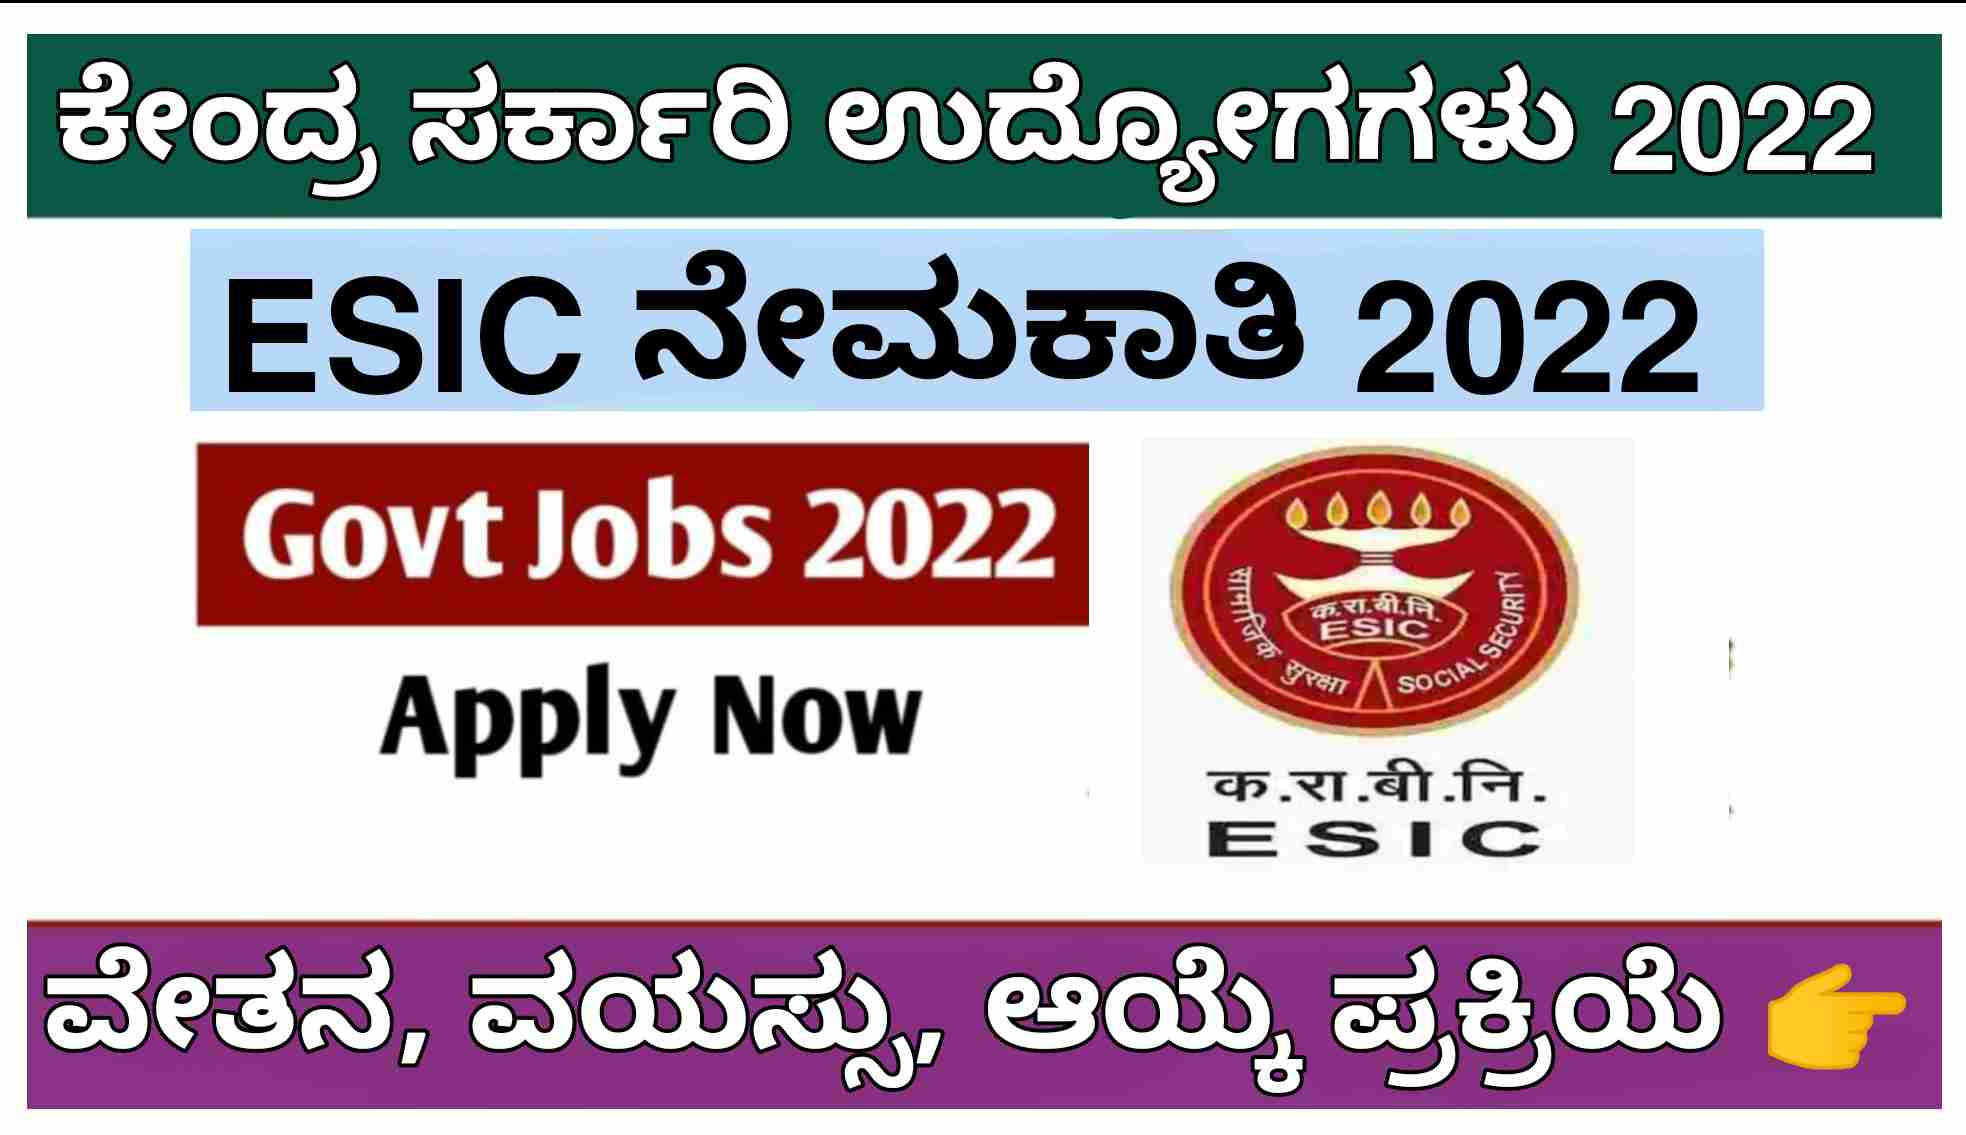 ESIC recruitment 2022